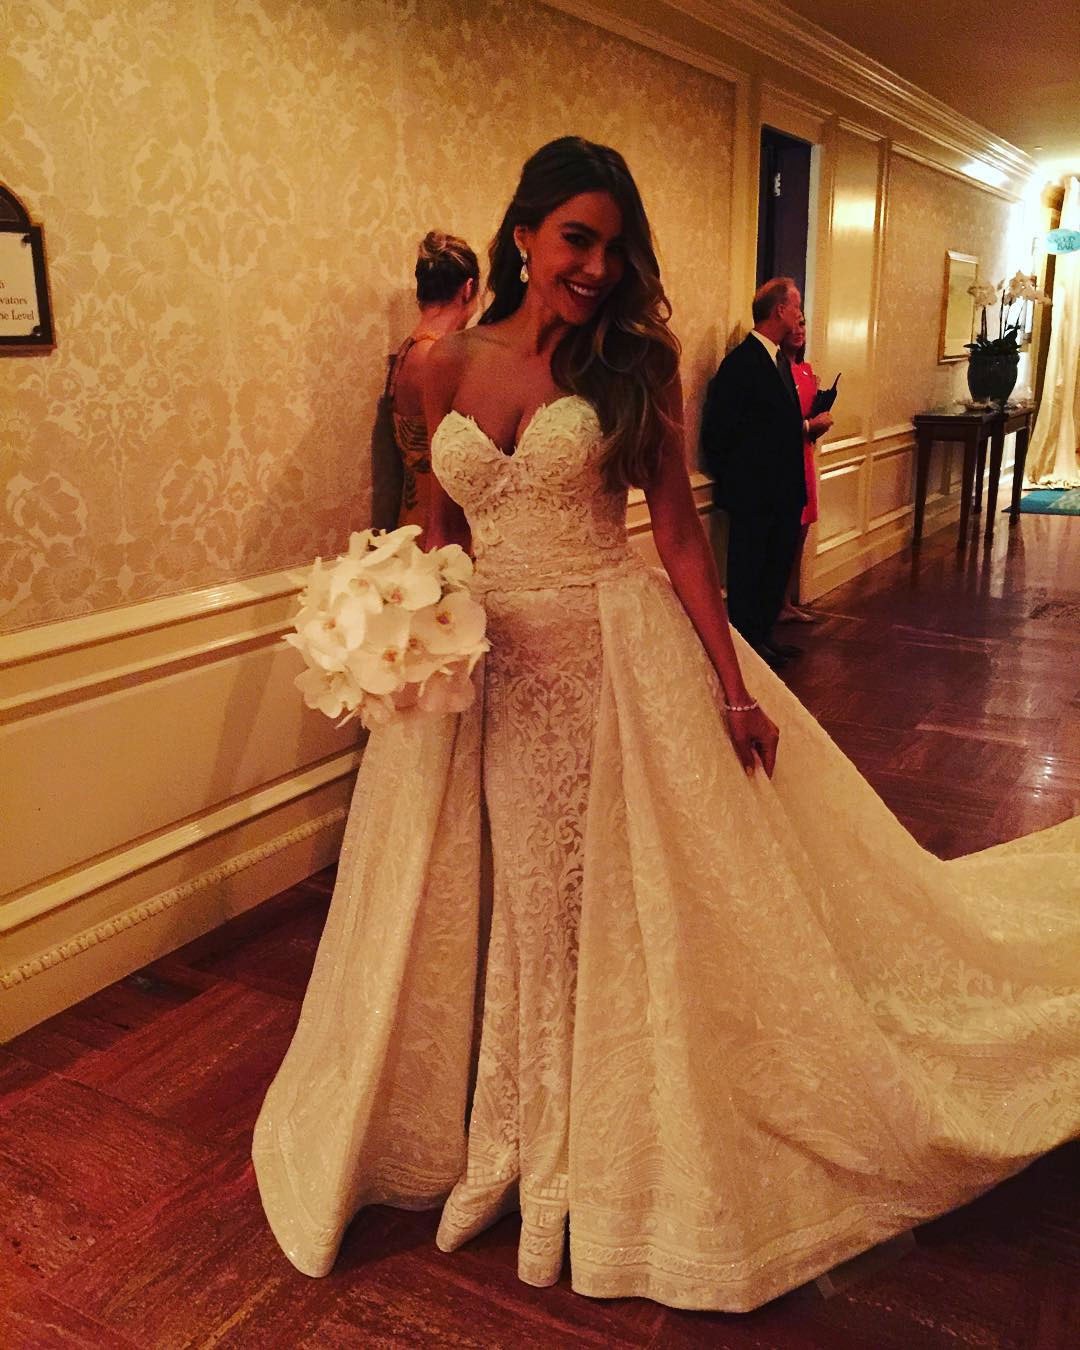 Sofia Vergara's wedding dress